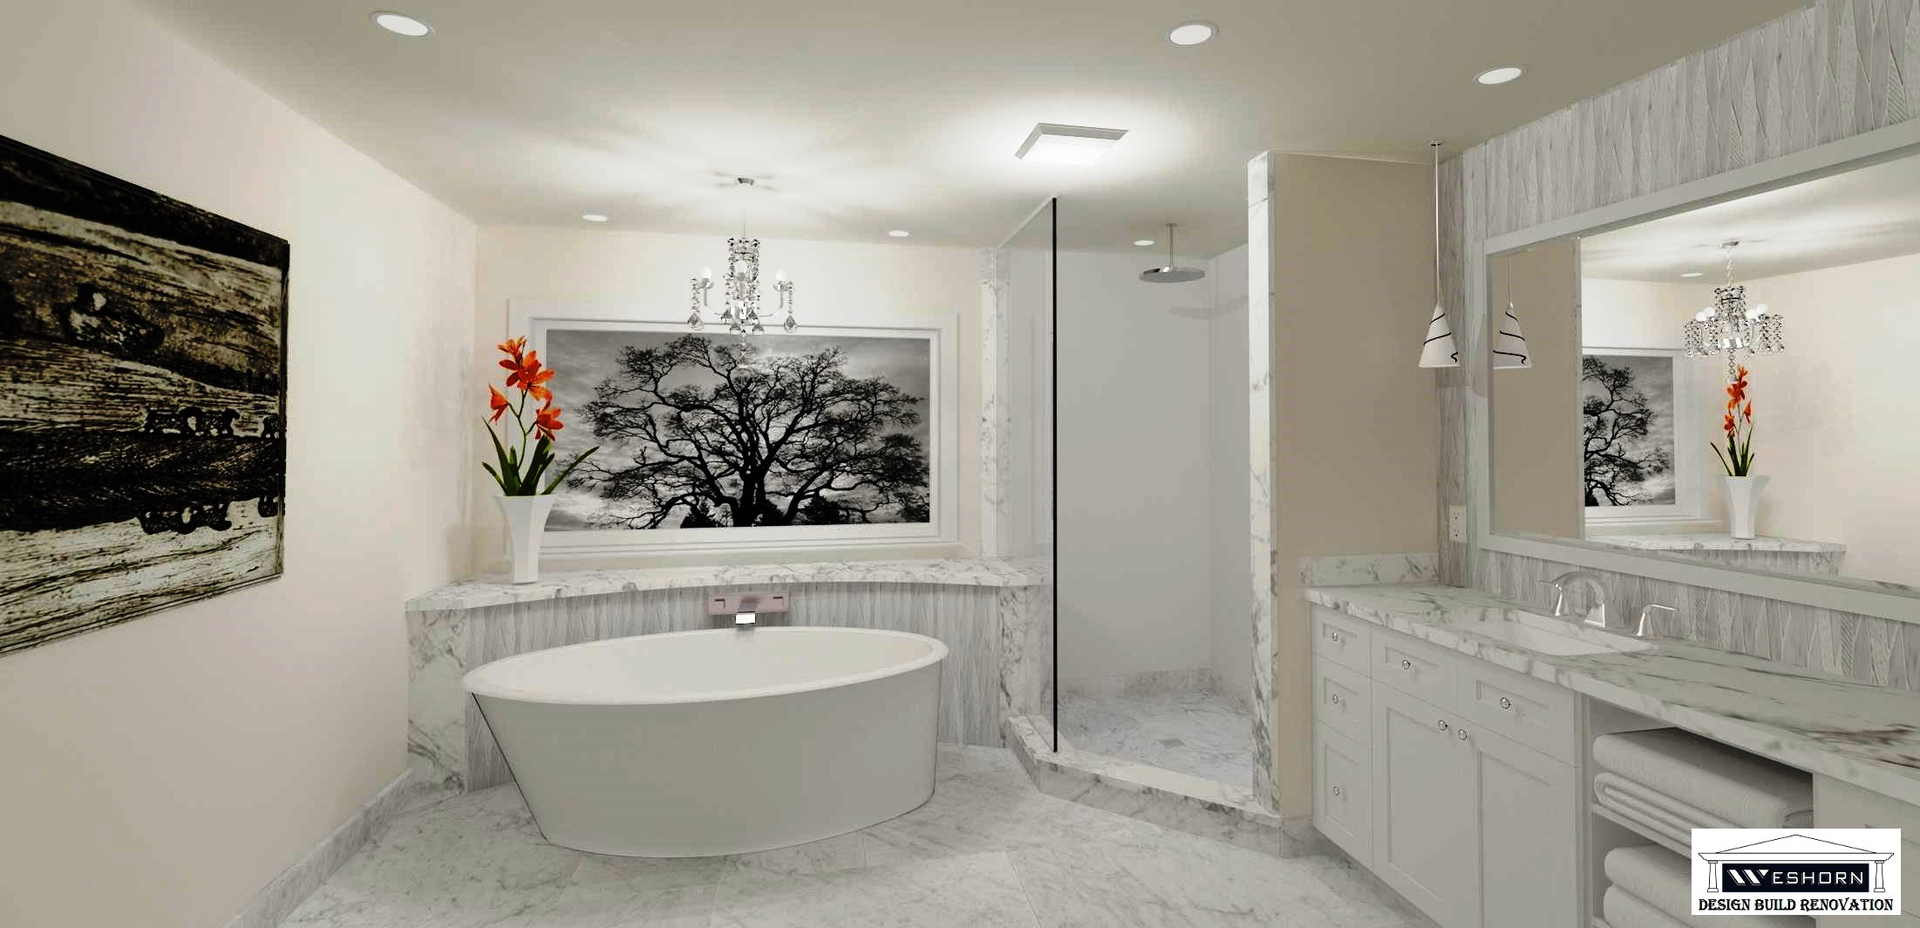 Design Kitchen Bath Remodeling Bathroom Custom Shower Basement